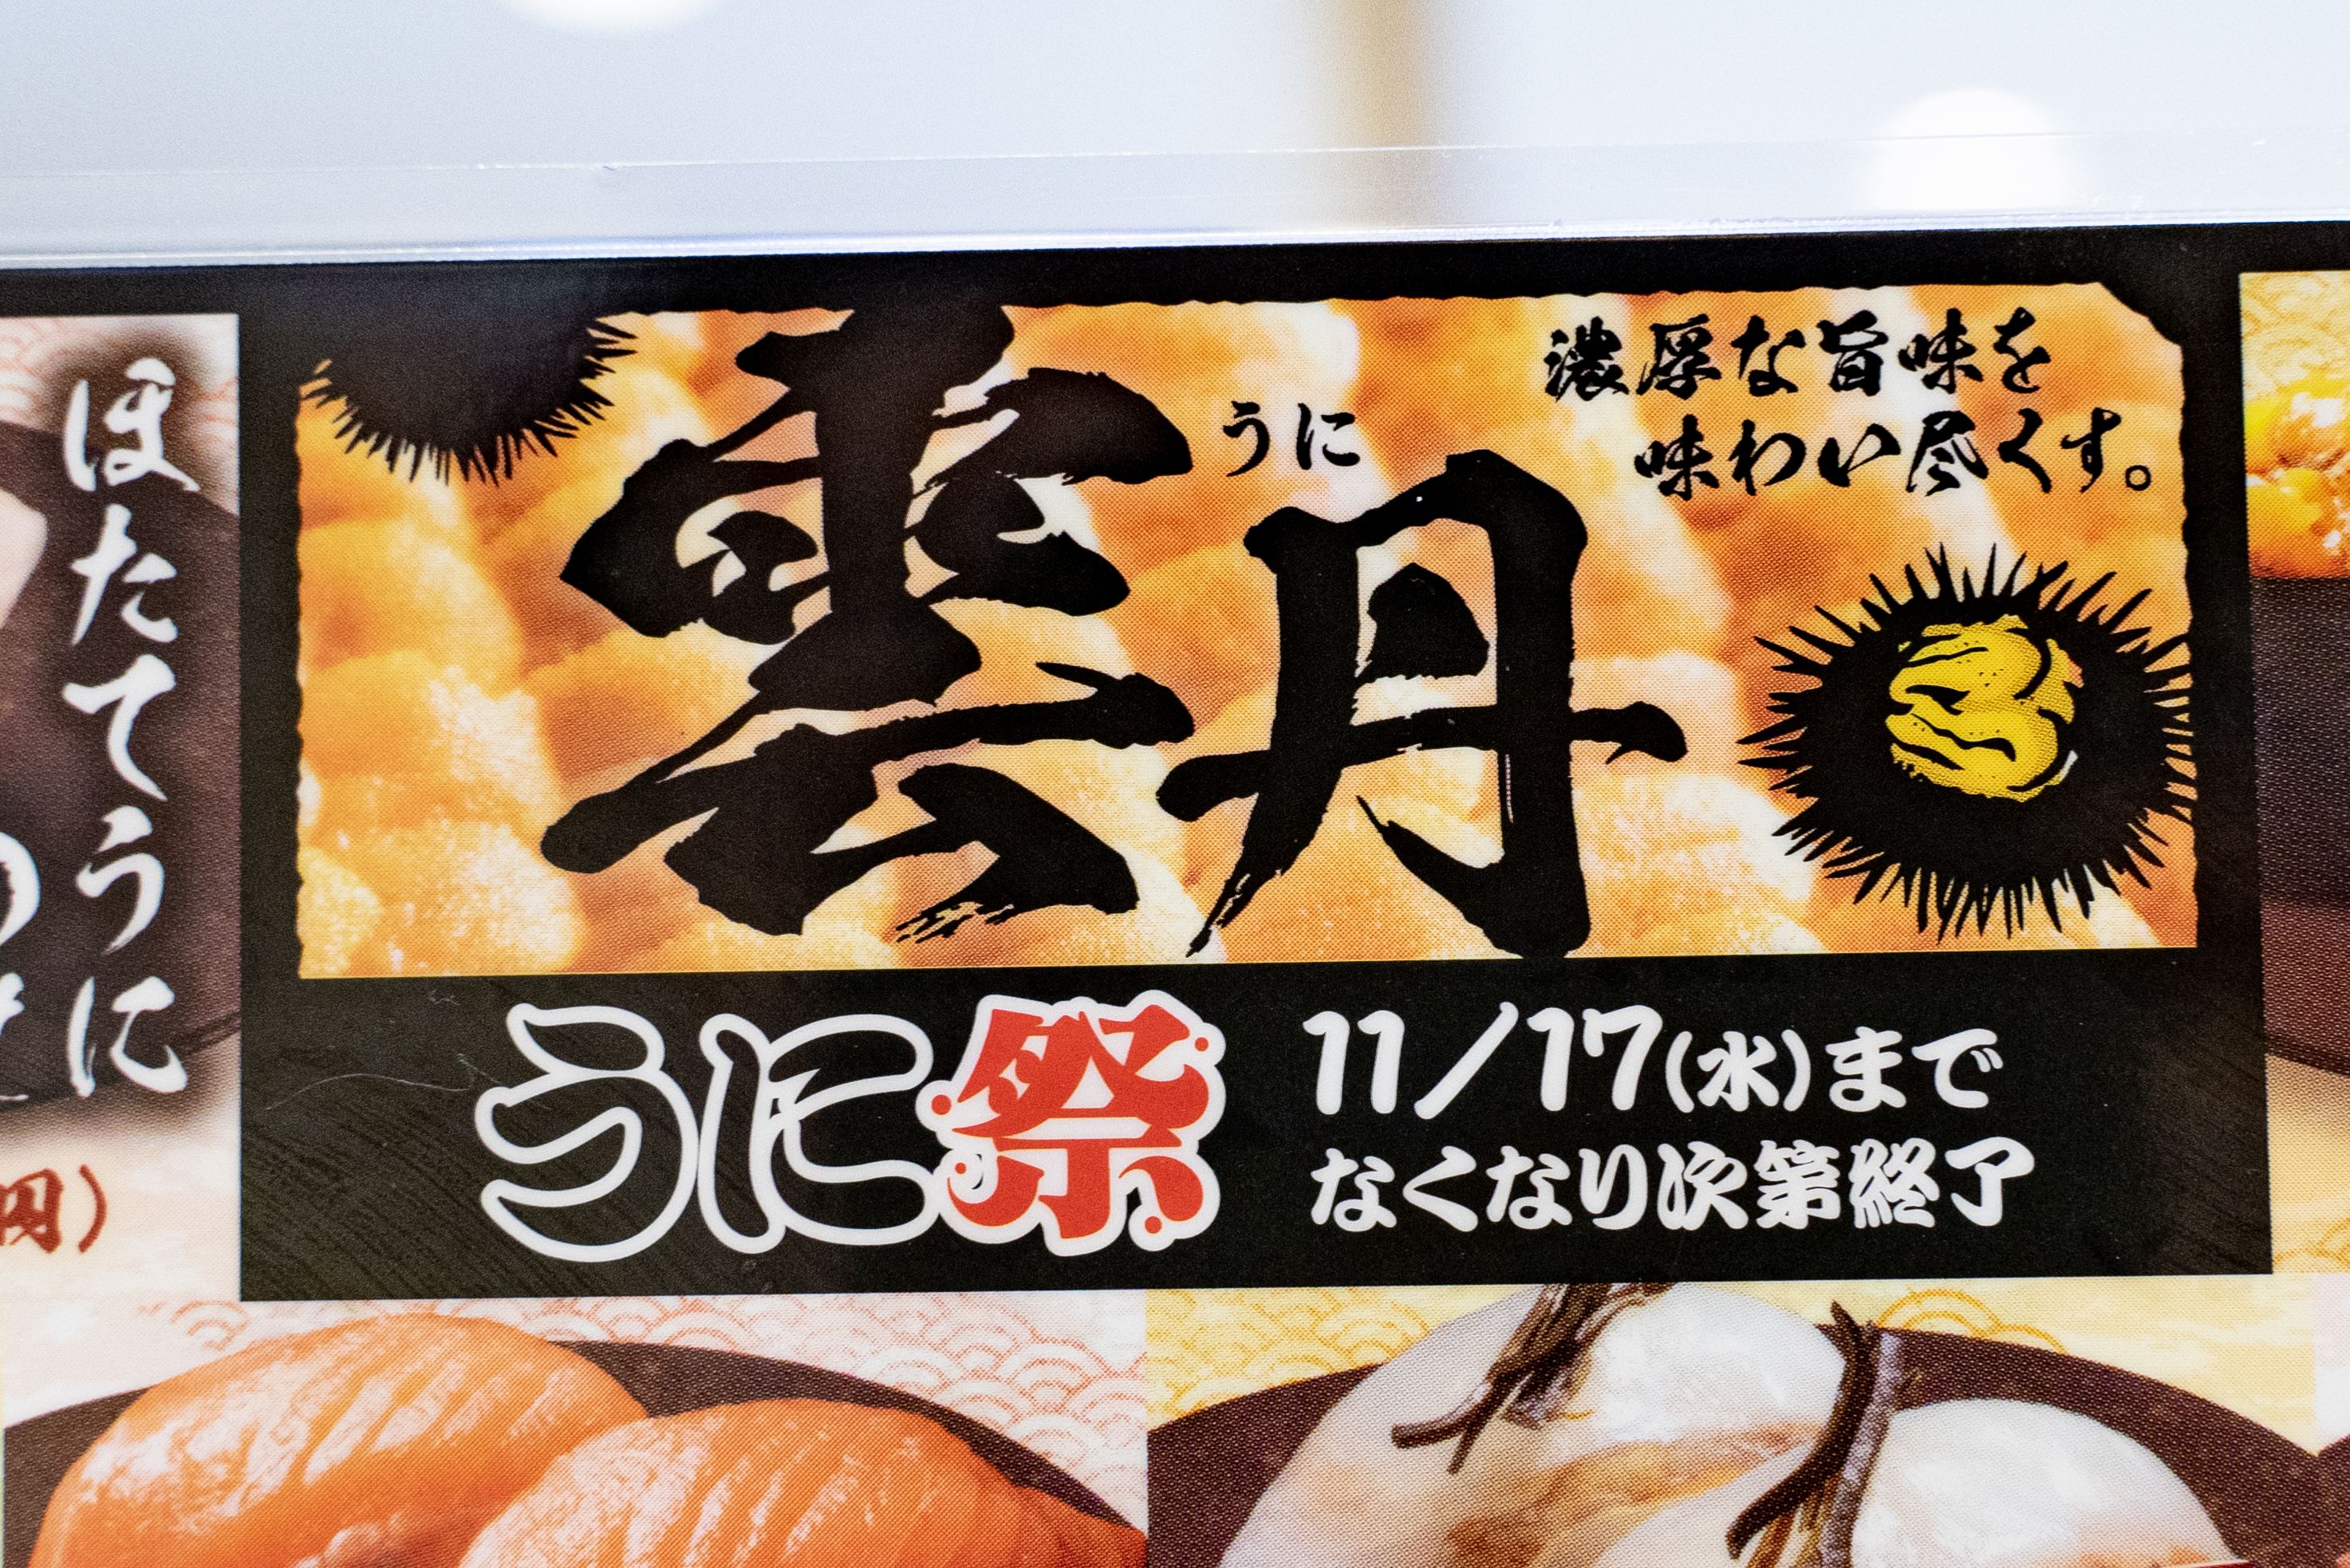 はま寿司 うに祭 で対象メニューをほぼ全て食べてみた結果 やはりウニは強かった ロケットニュース24